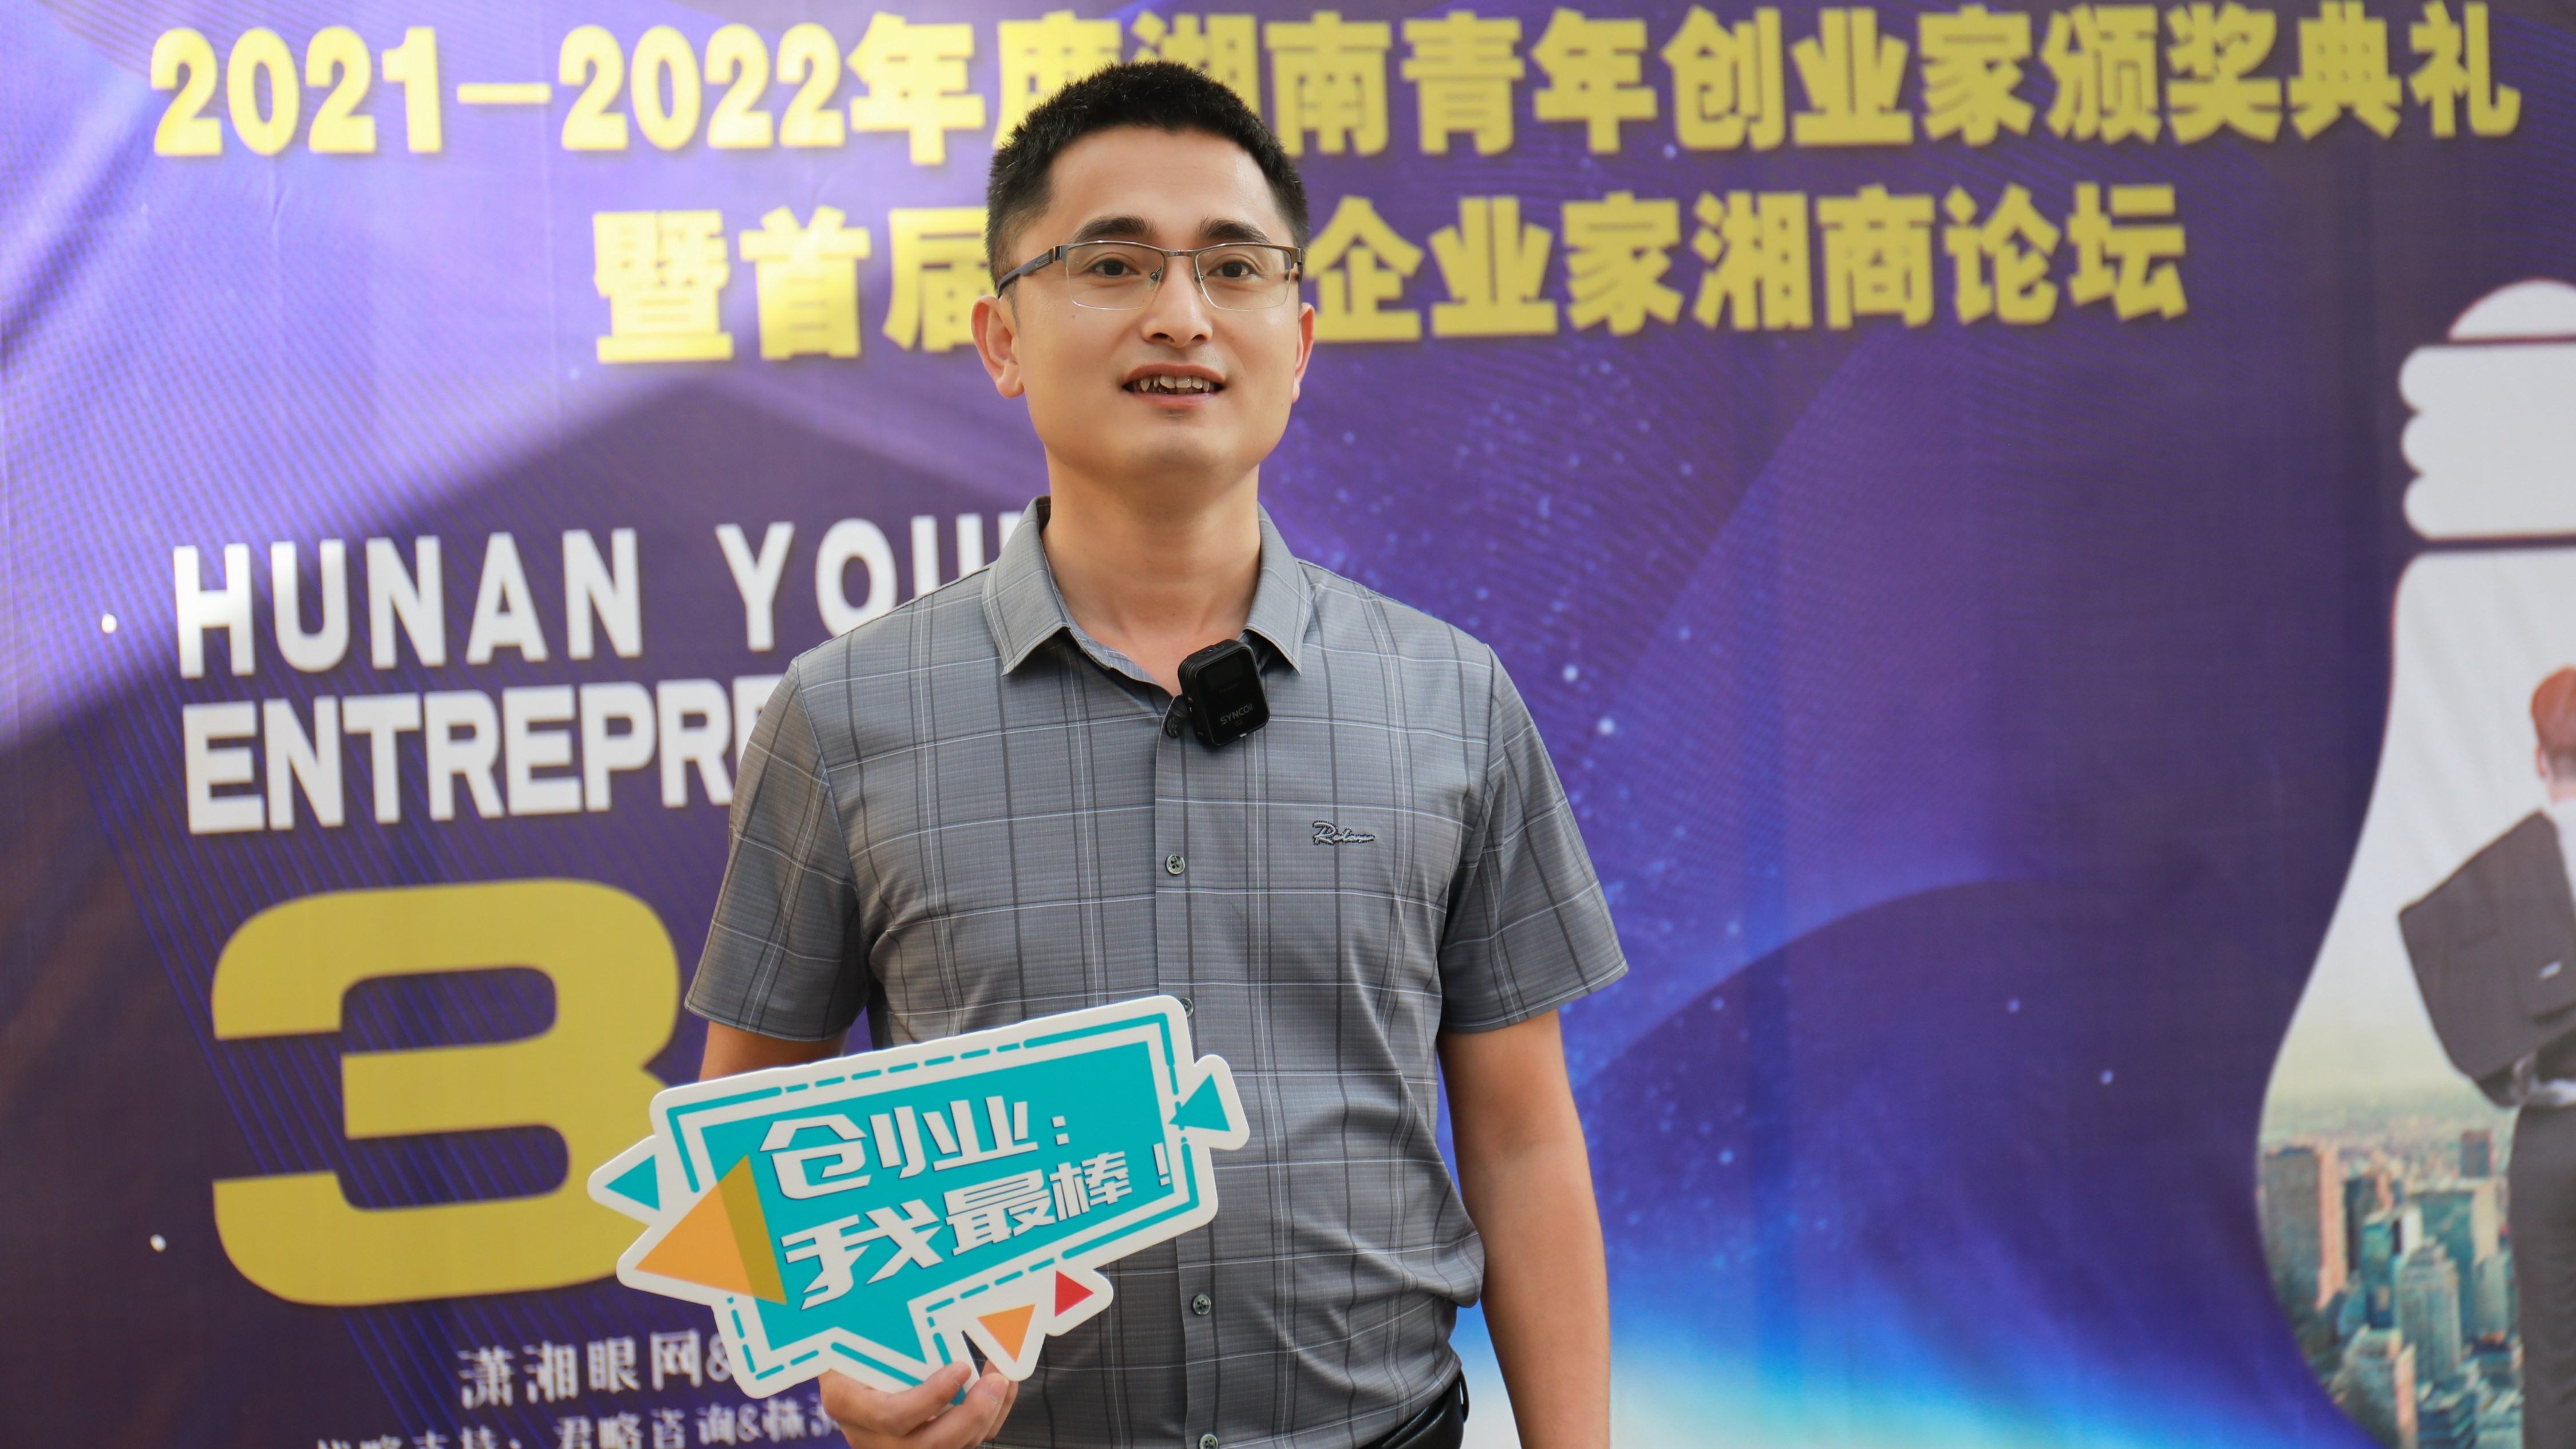 中科恒清李游被授予“2021-2022年度湖南青年创业家”奖